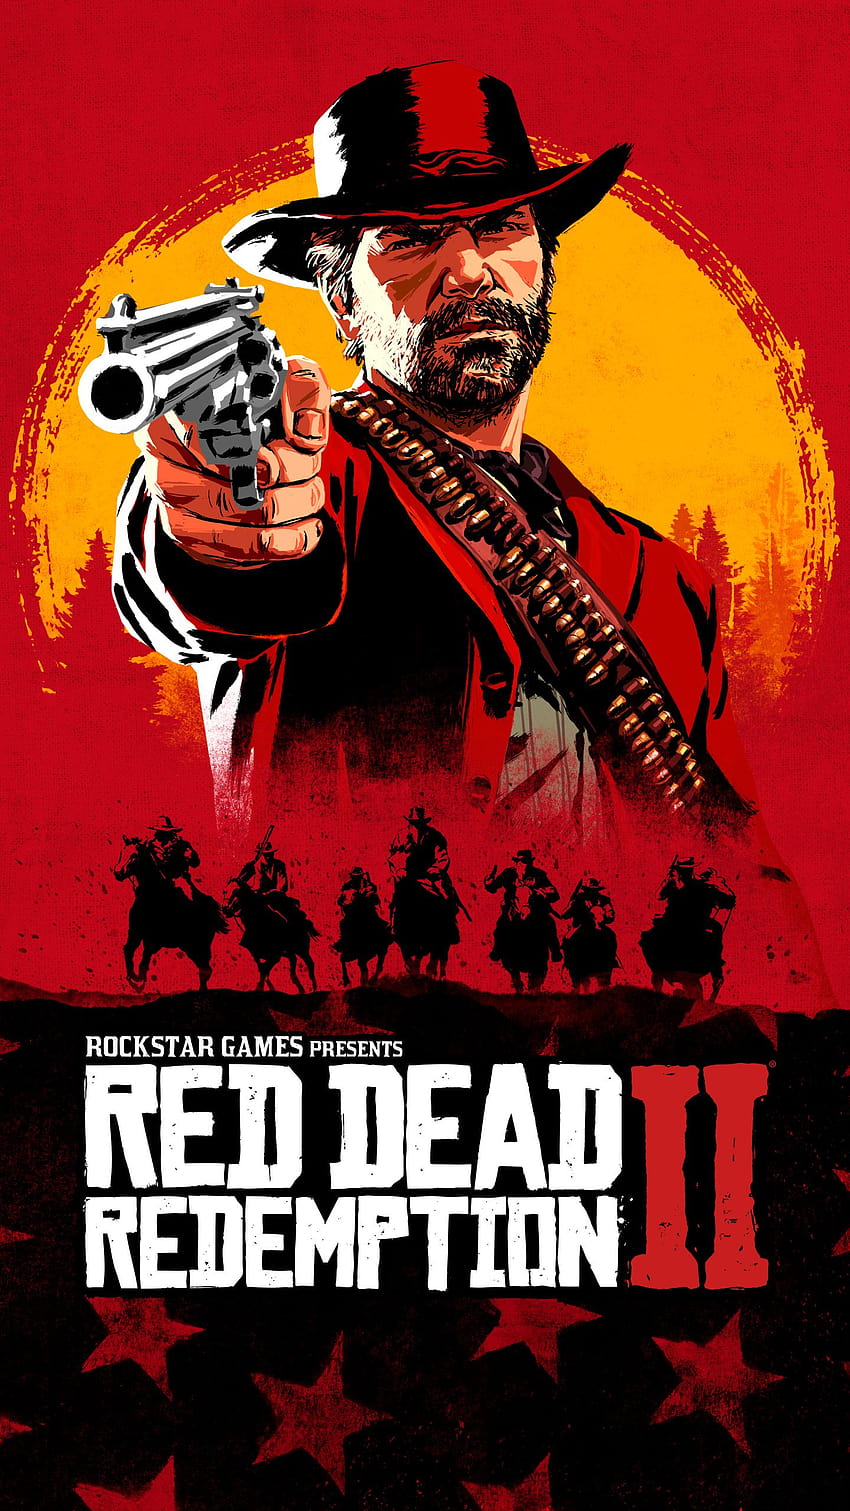 Red Dead Redemption 2, teléfono rdr2 fondo de pantalla del teléfono